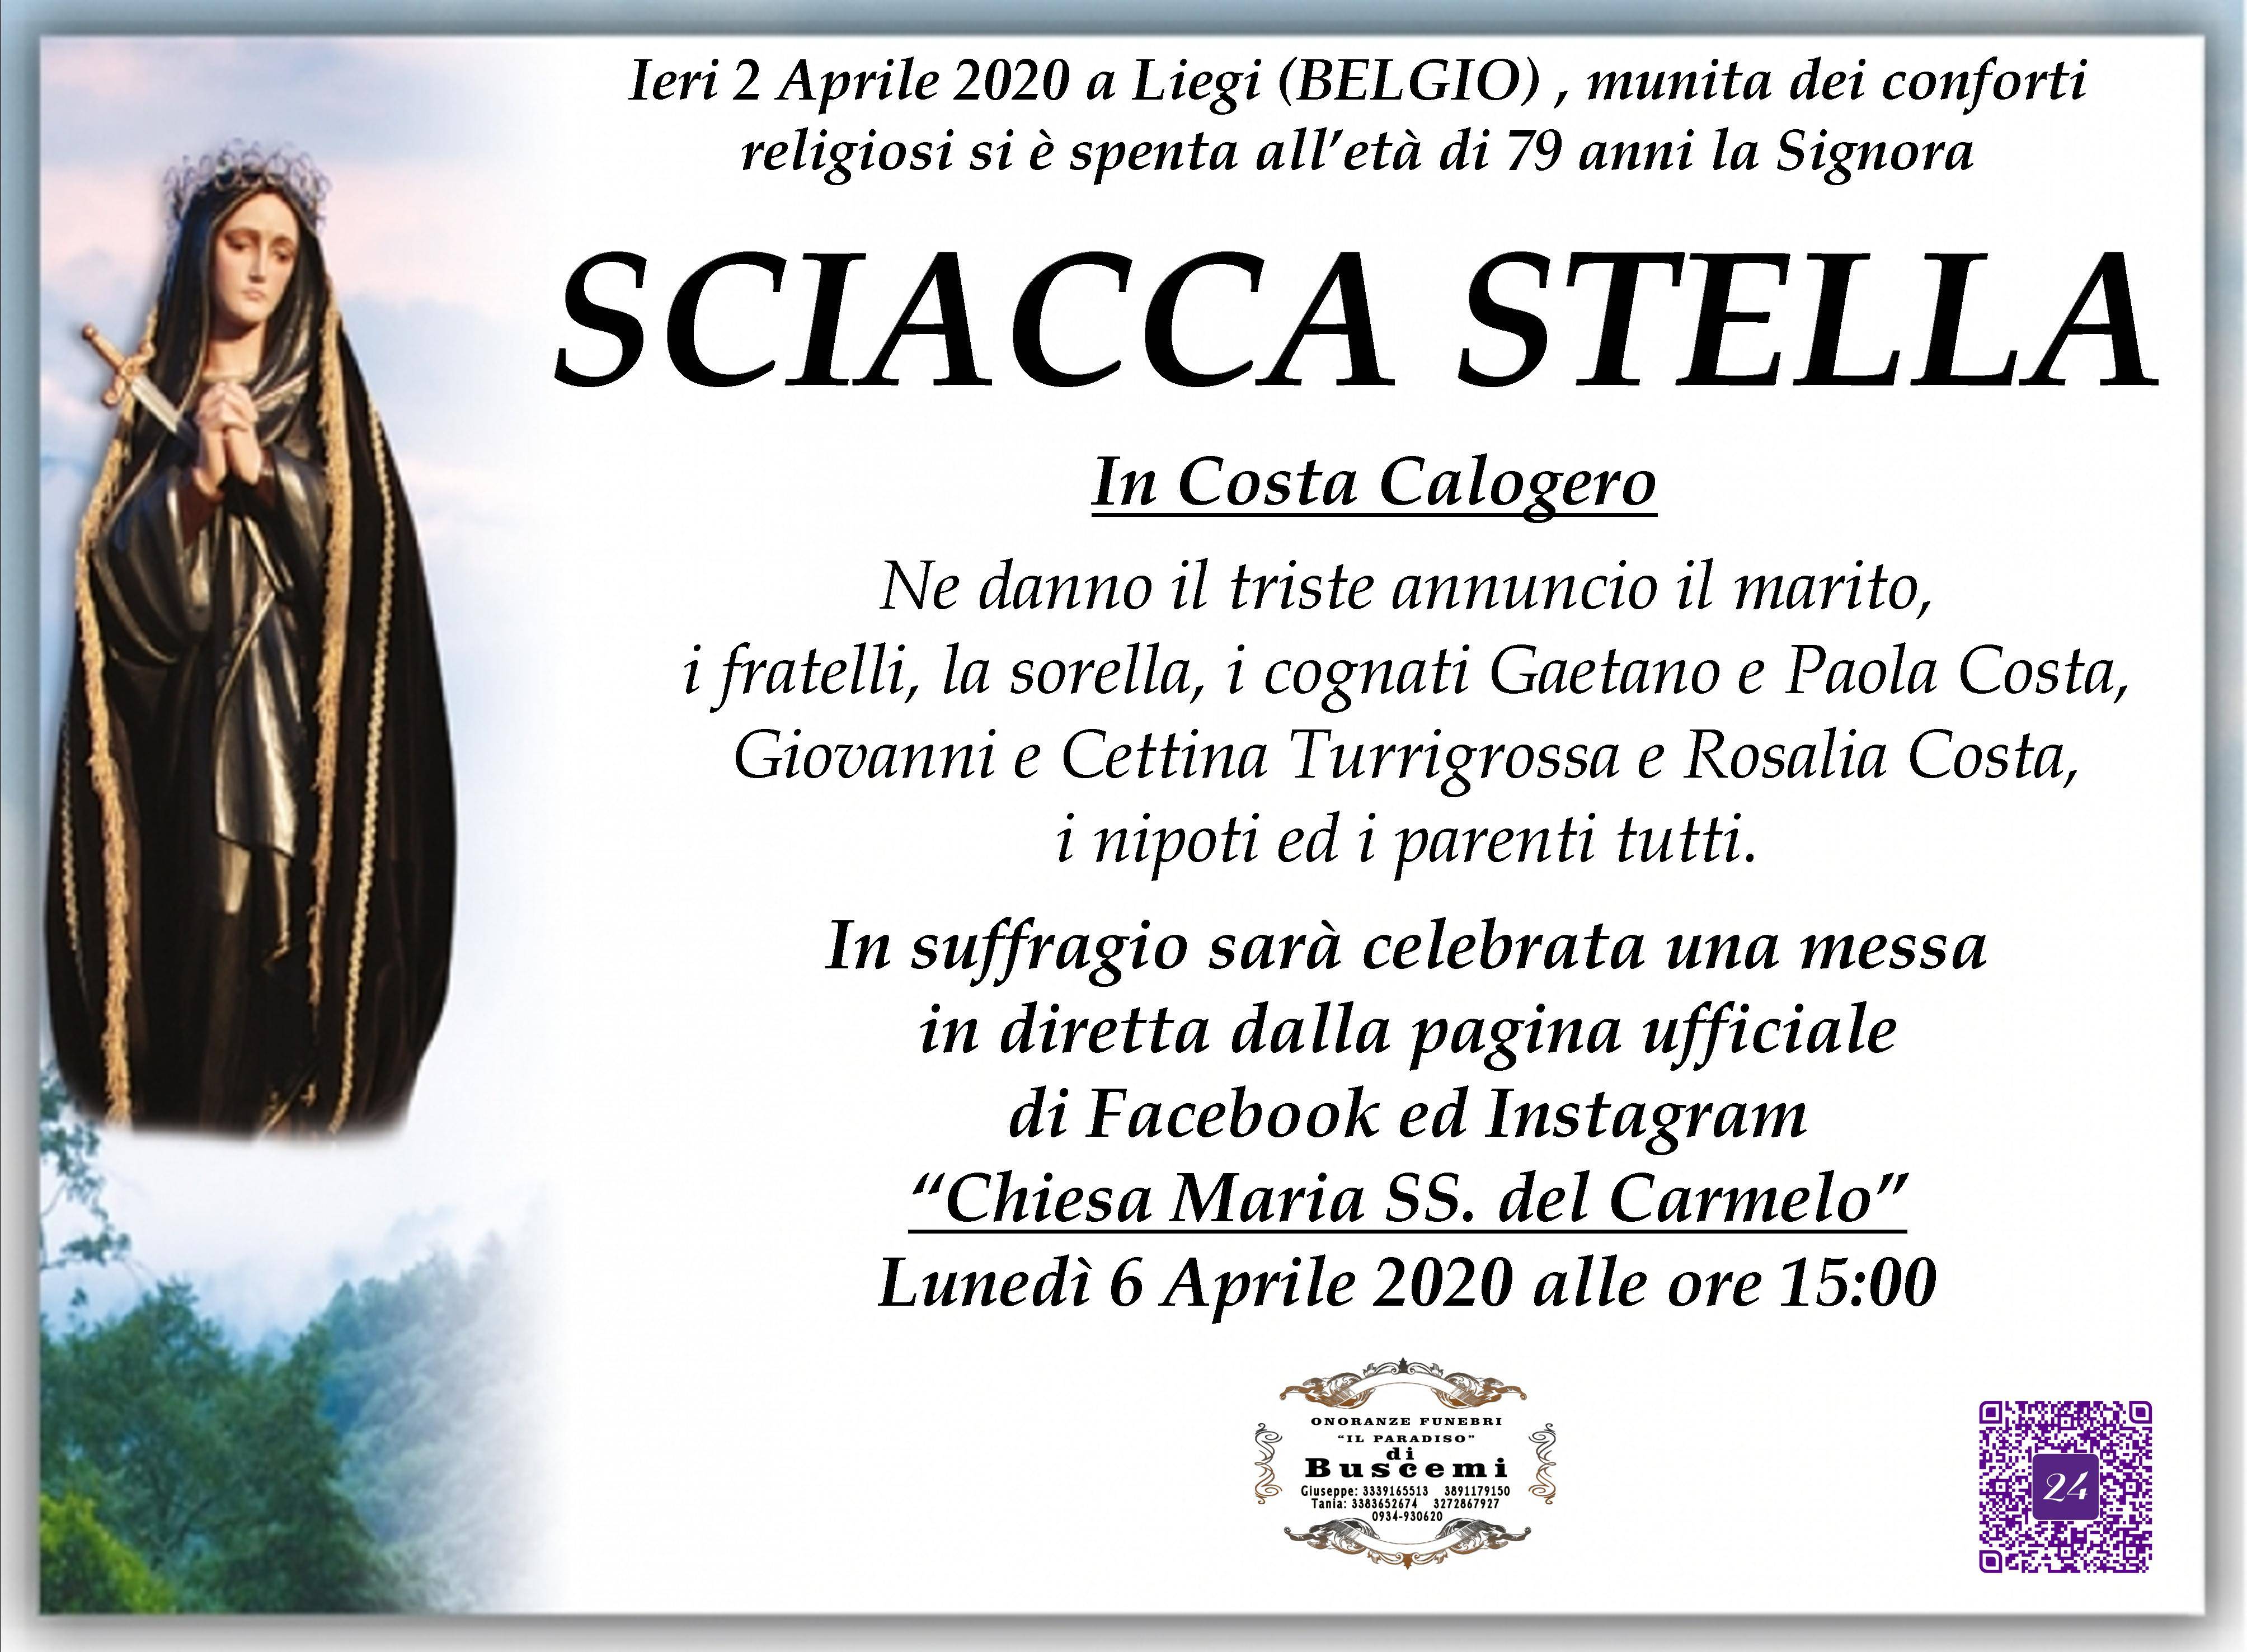 Stella Sciacca